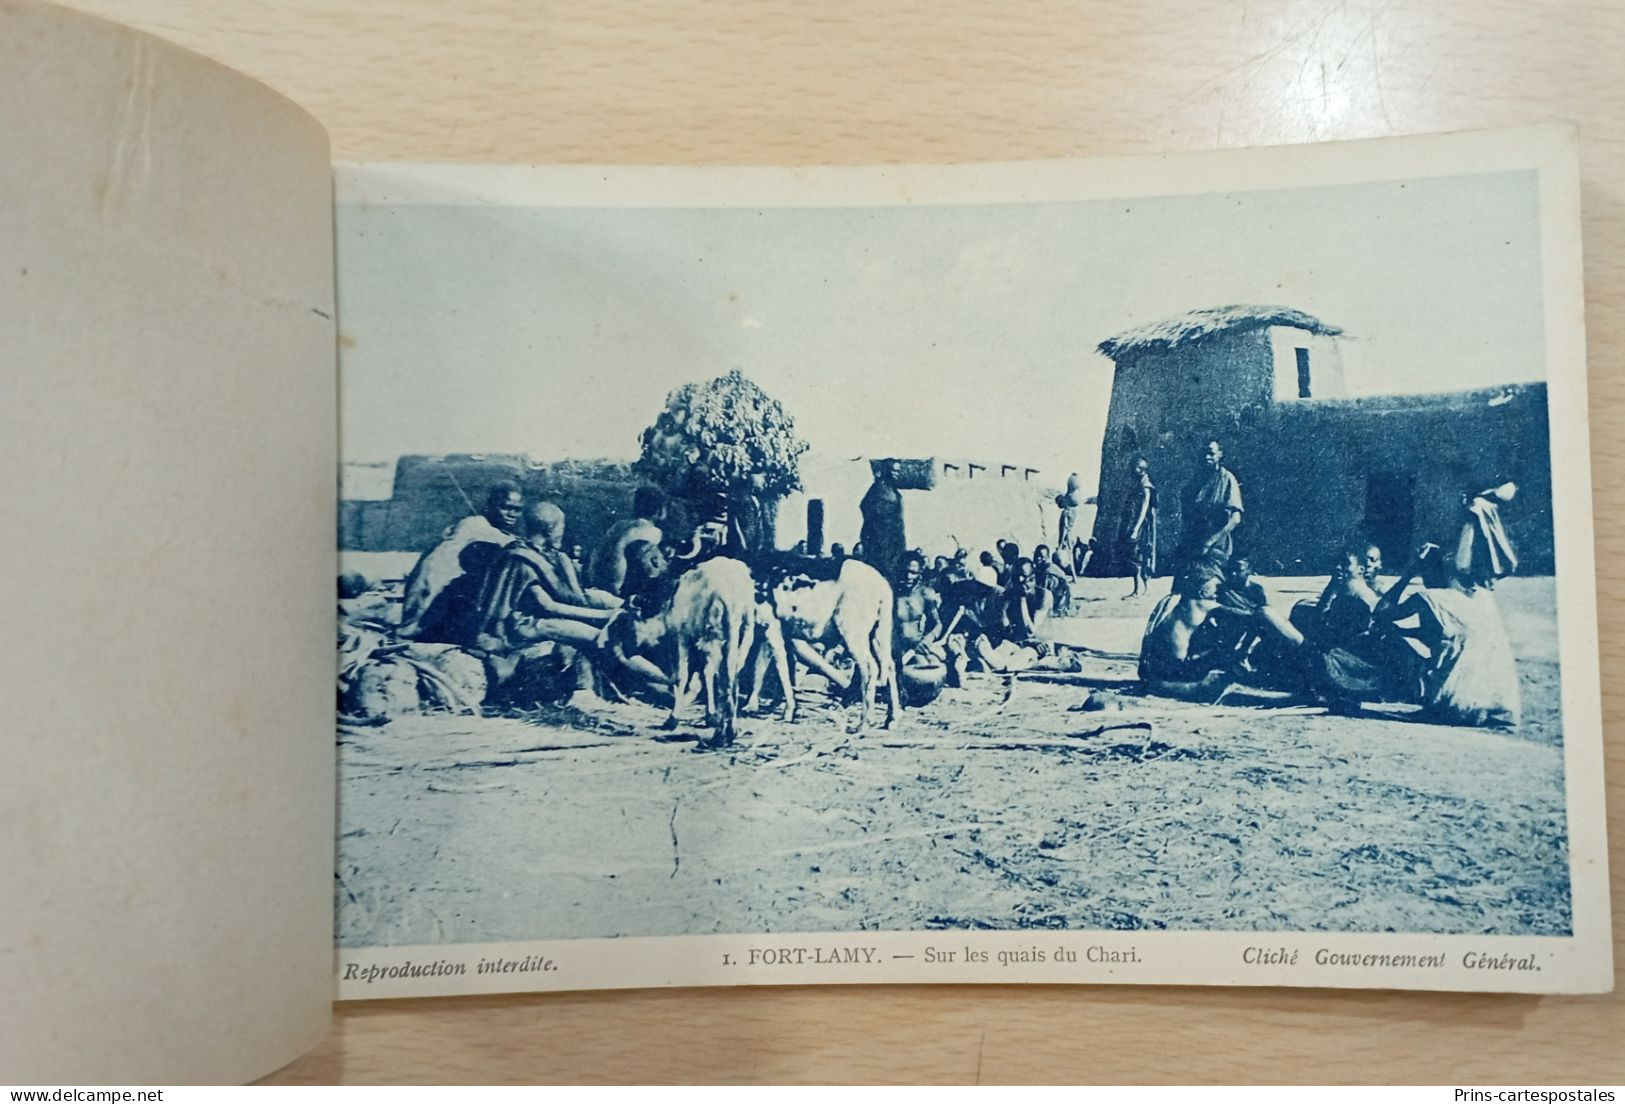 Carnet 20 cartes du Tchad - Albums des colonies édités par la maison d'Art Colonial